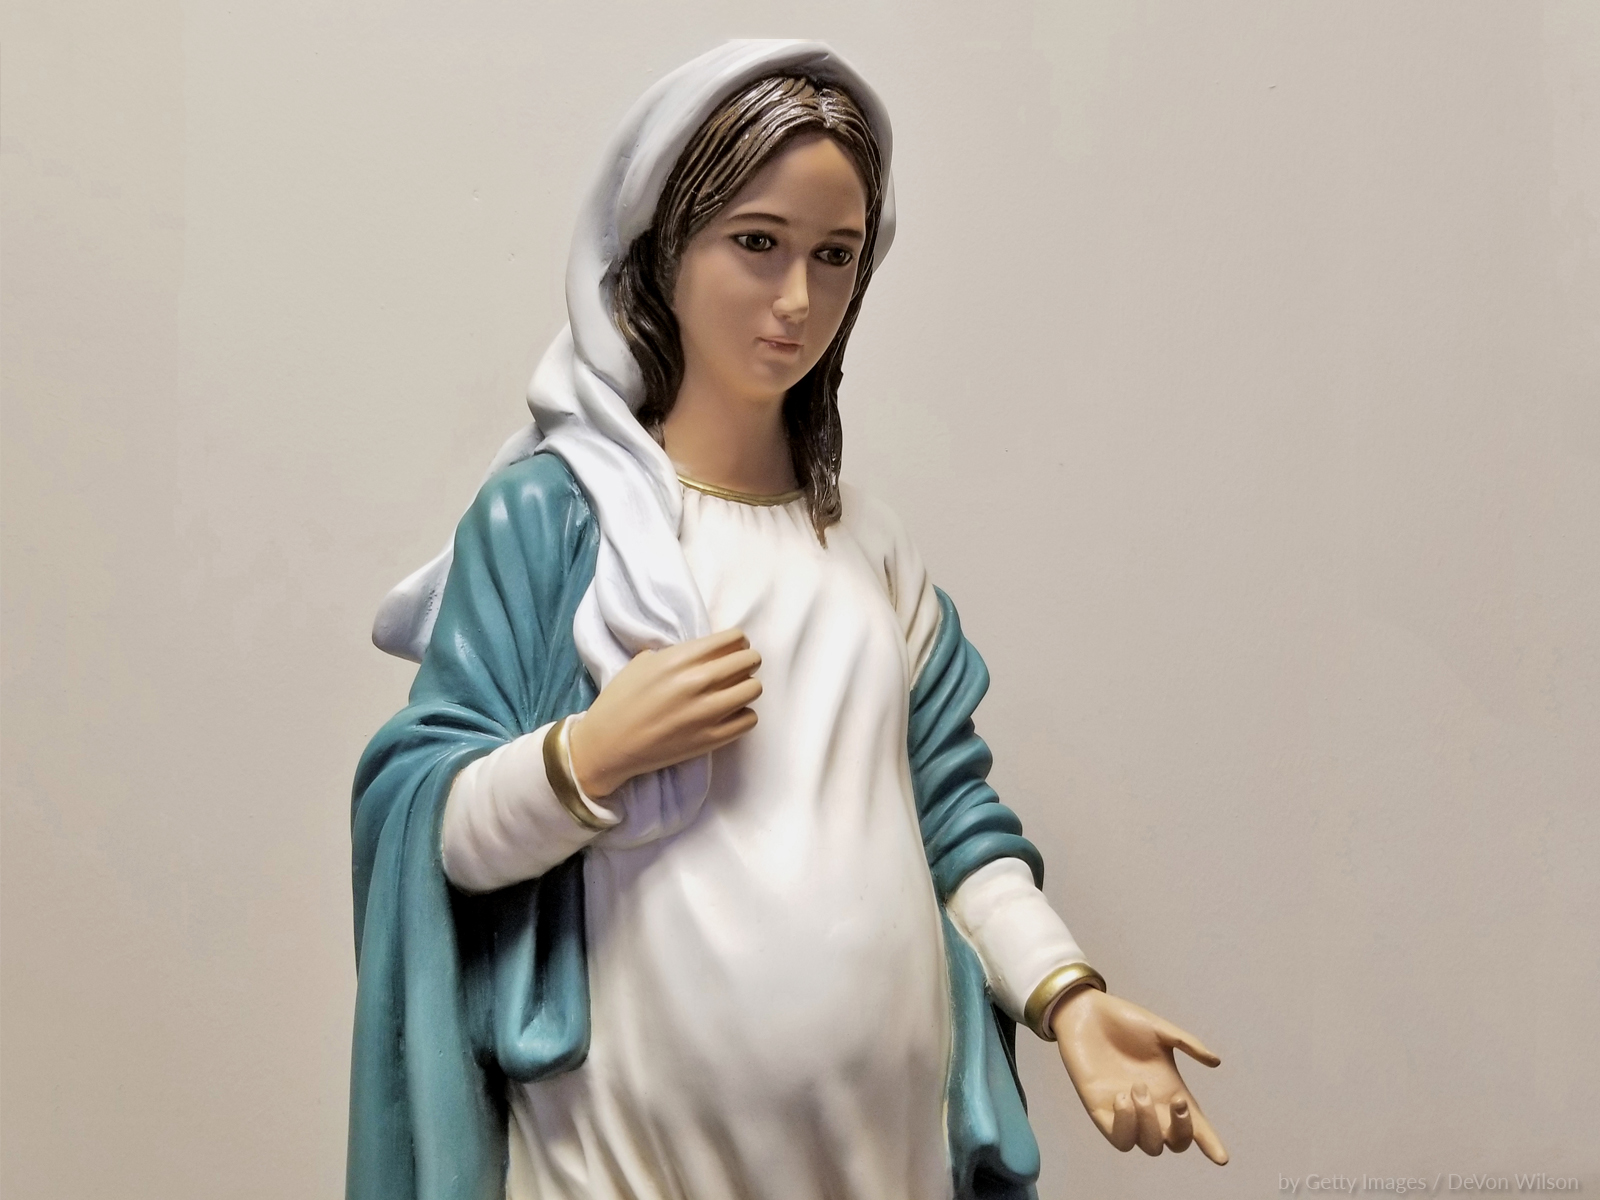 Maria na gestação: um auxílio para a maternidade